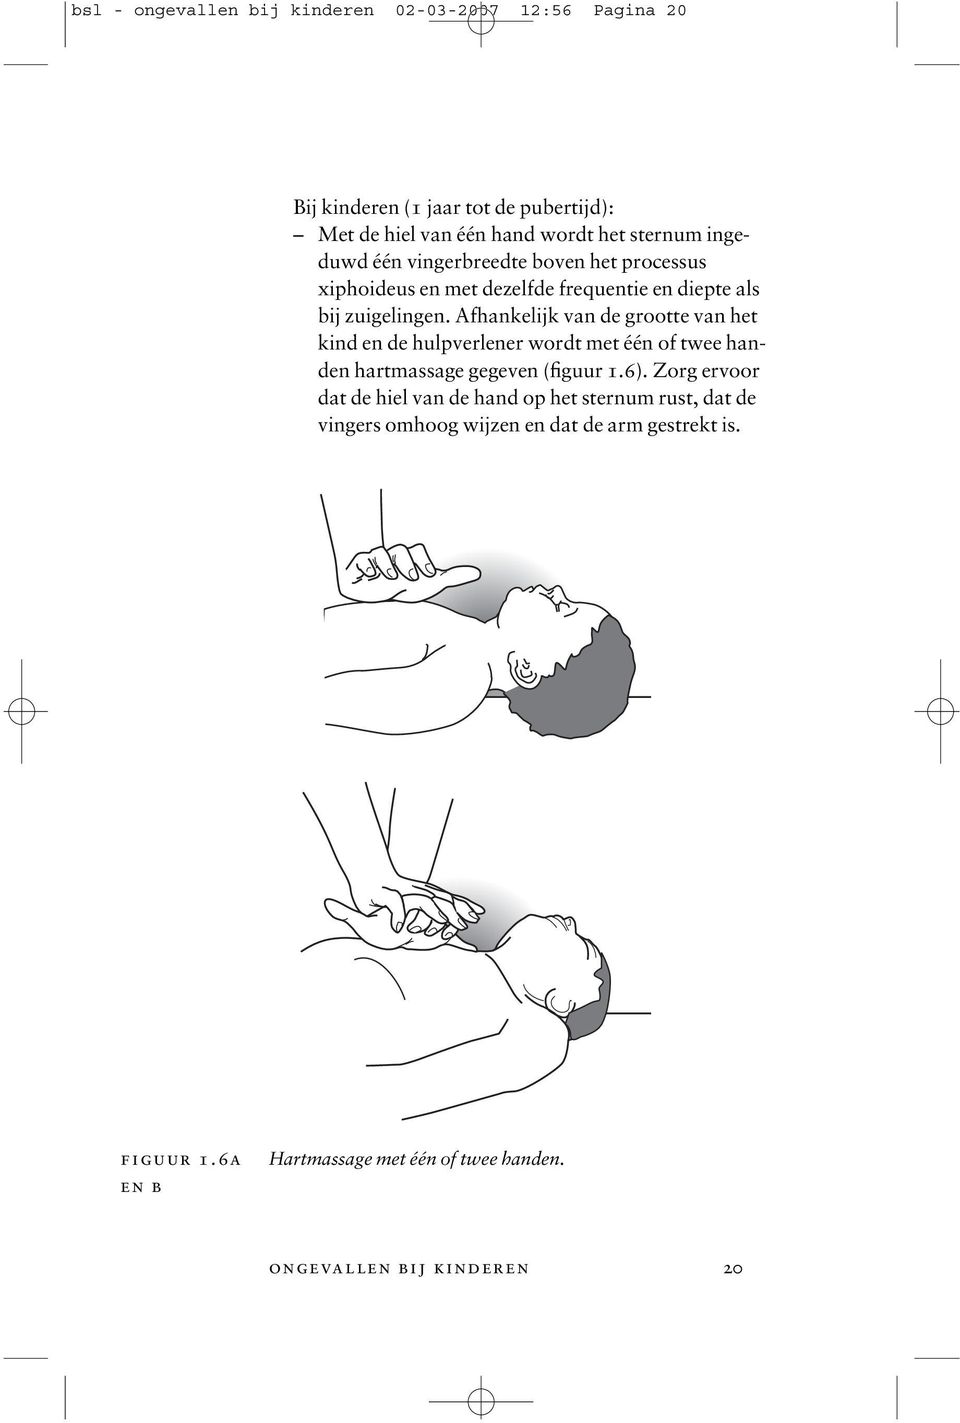 Afhankelijk van de grootte van het kind en de hulpverlener wordt met één of twee handen hartmassage gegeven (figuur 1.6).